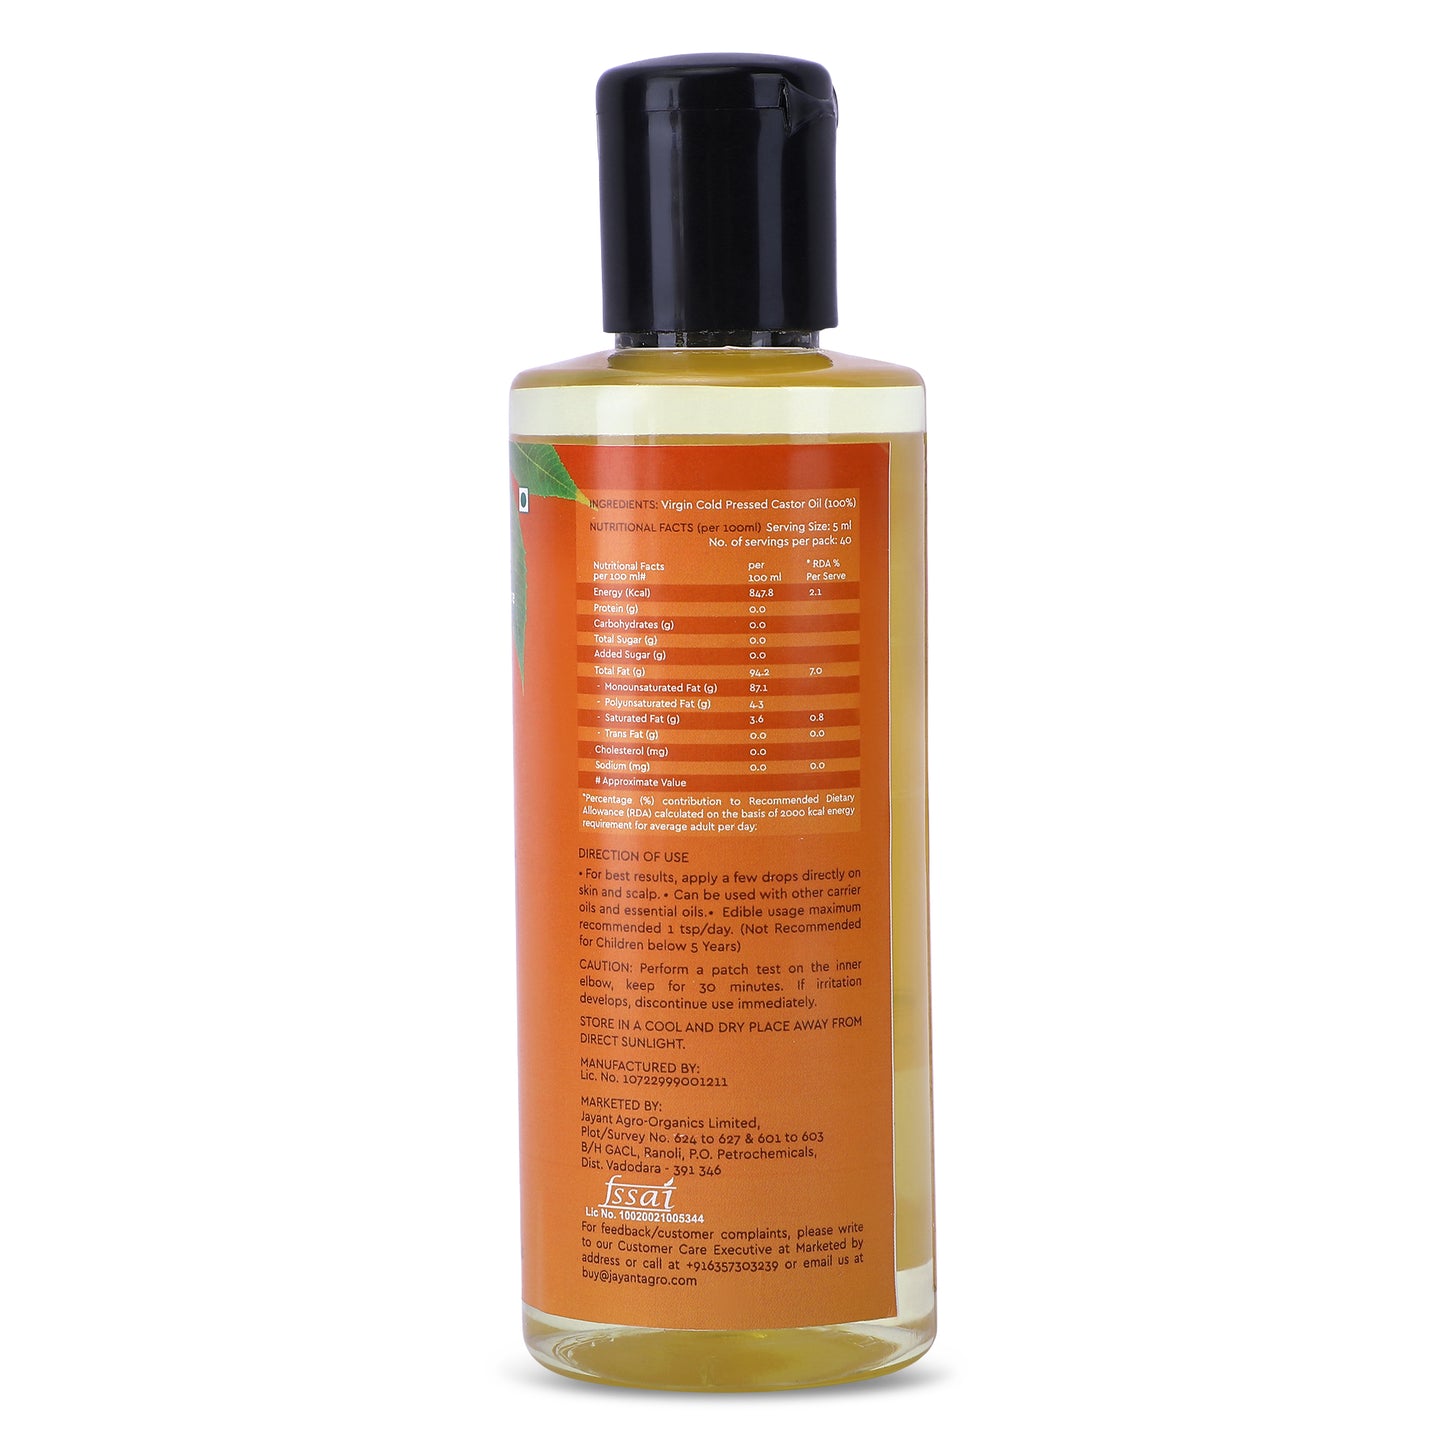 Ericare cold-pressed castor oil bottle's back showing ingredients, nutrition value and description on usage